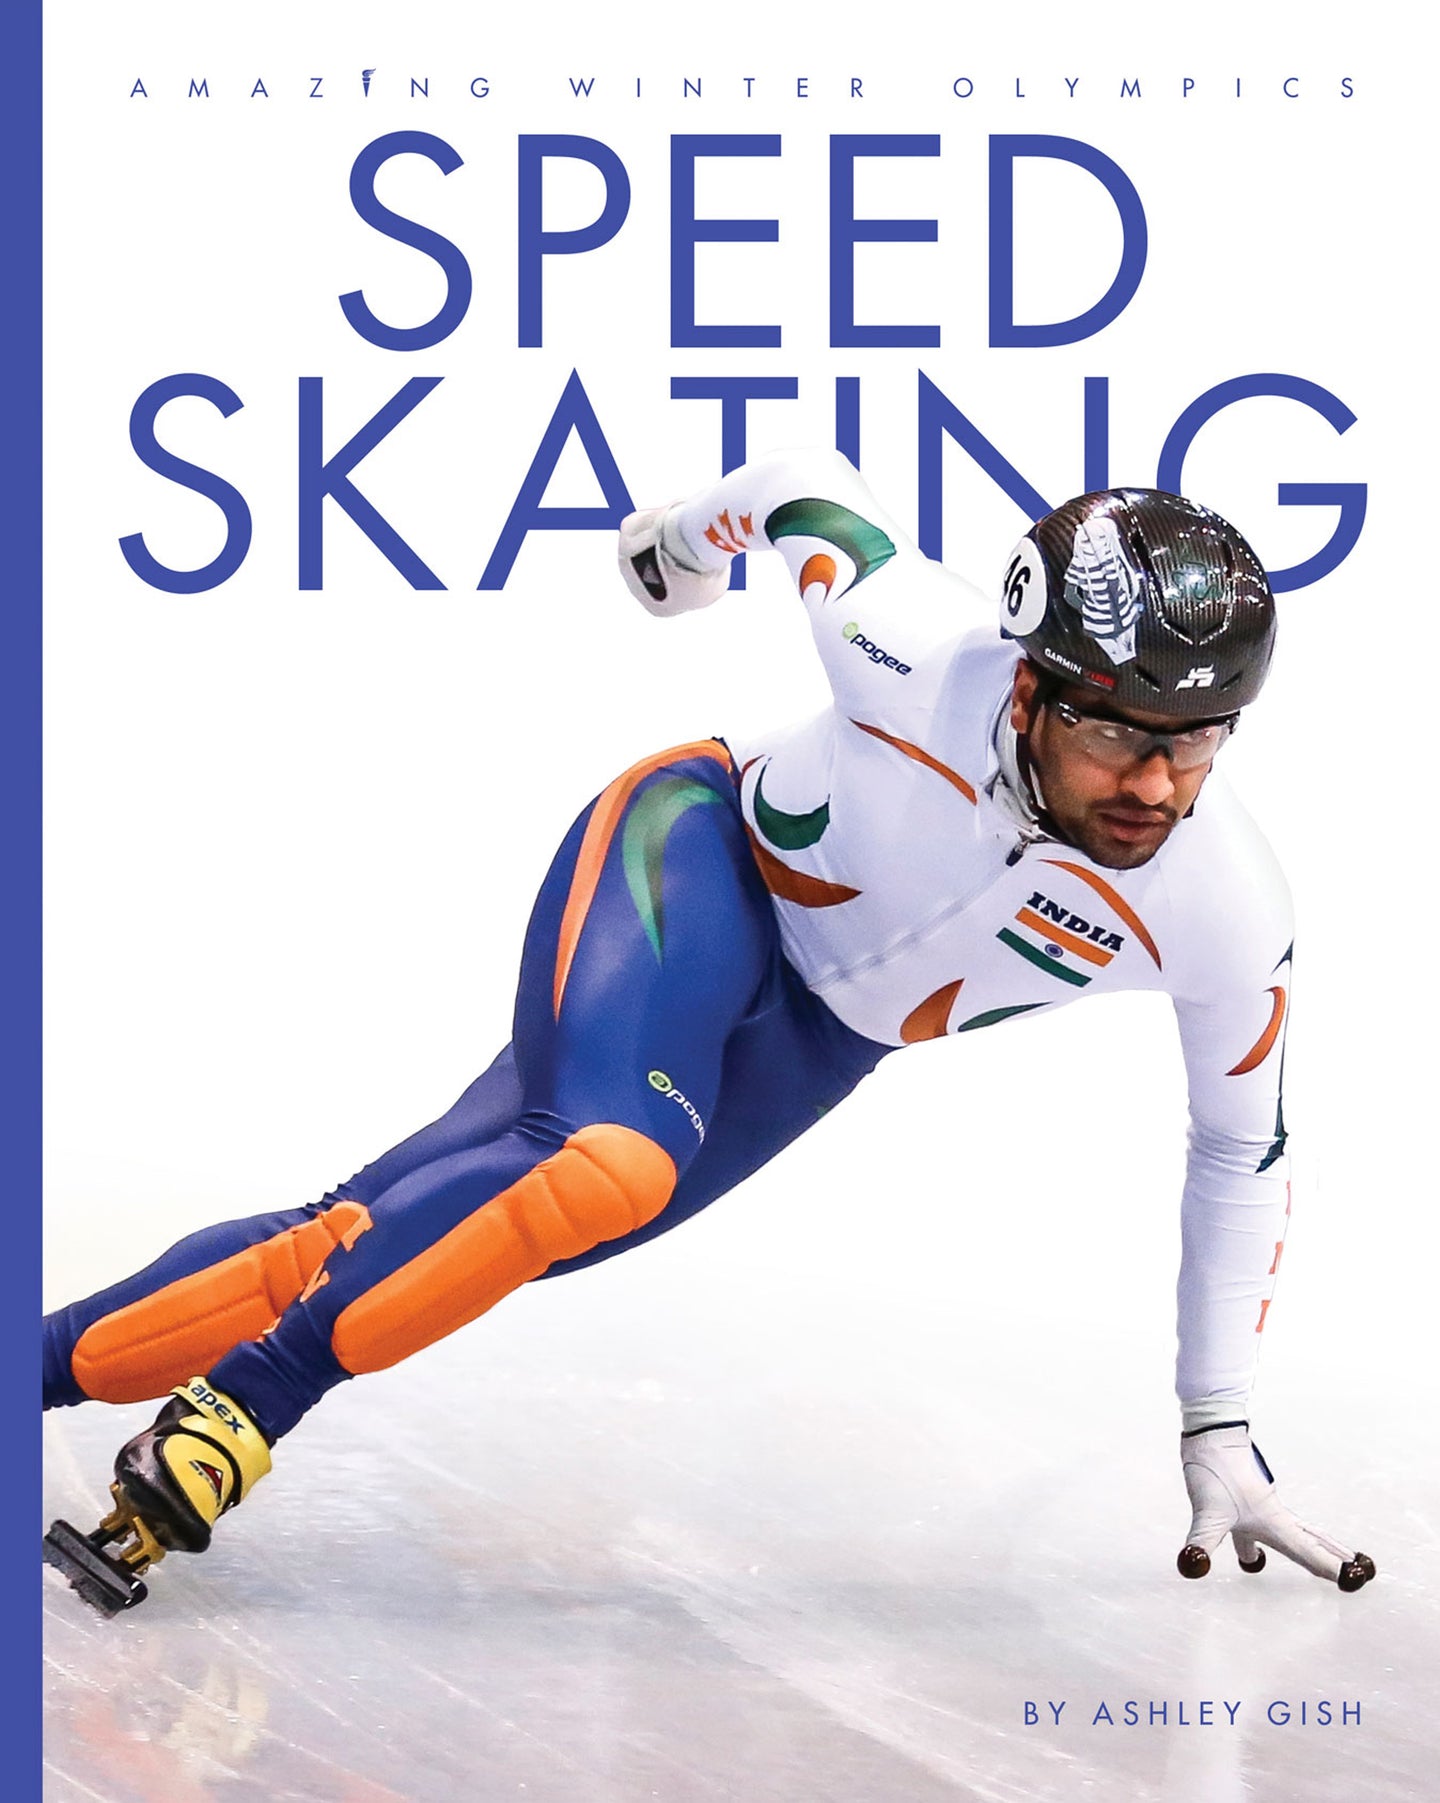 Erstaunliche Olympische Winterspiele: Eisschnelllauf